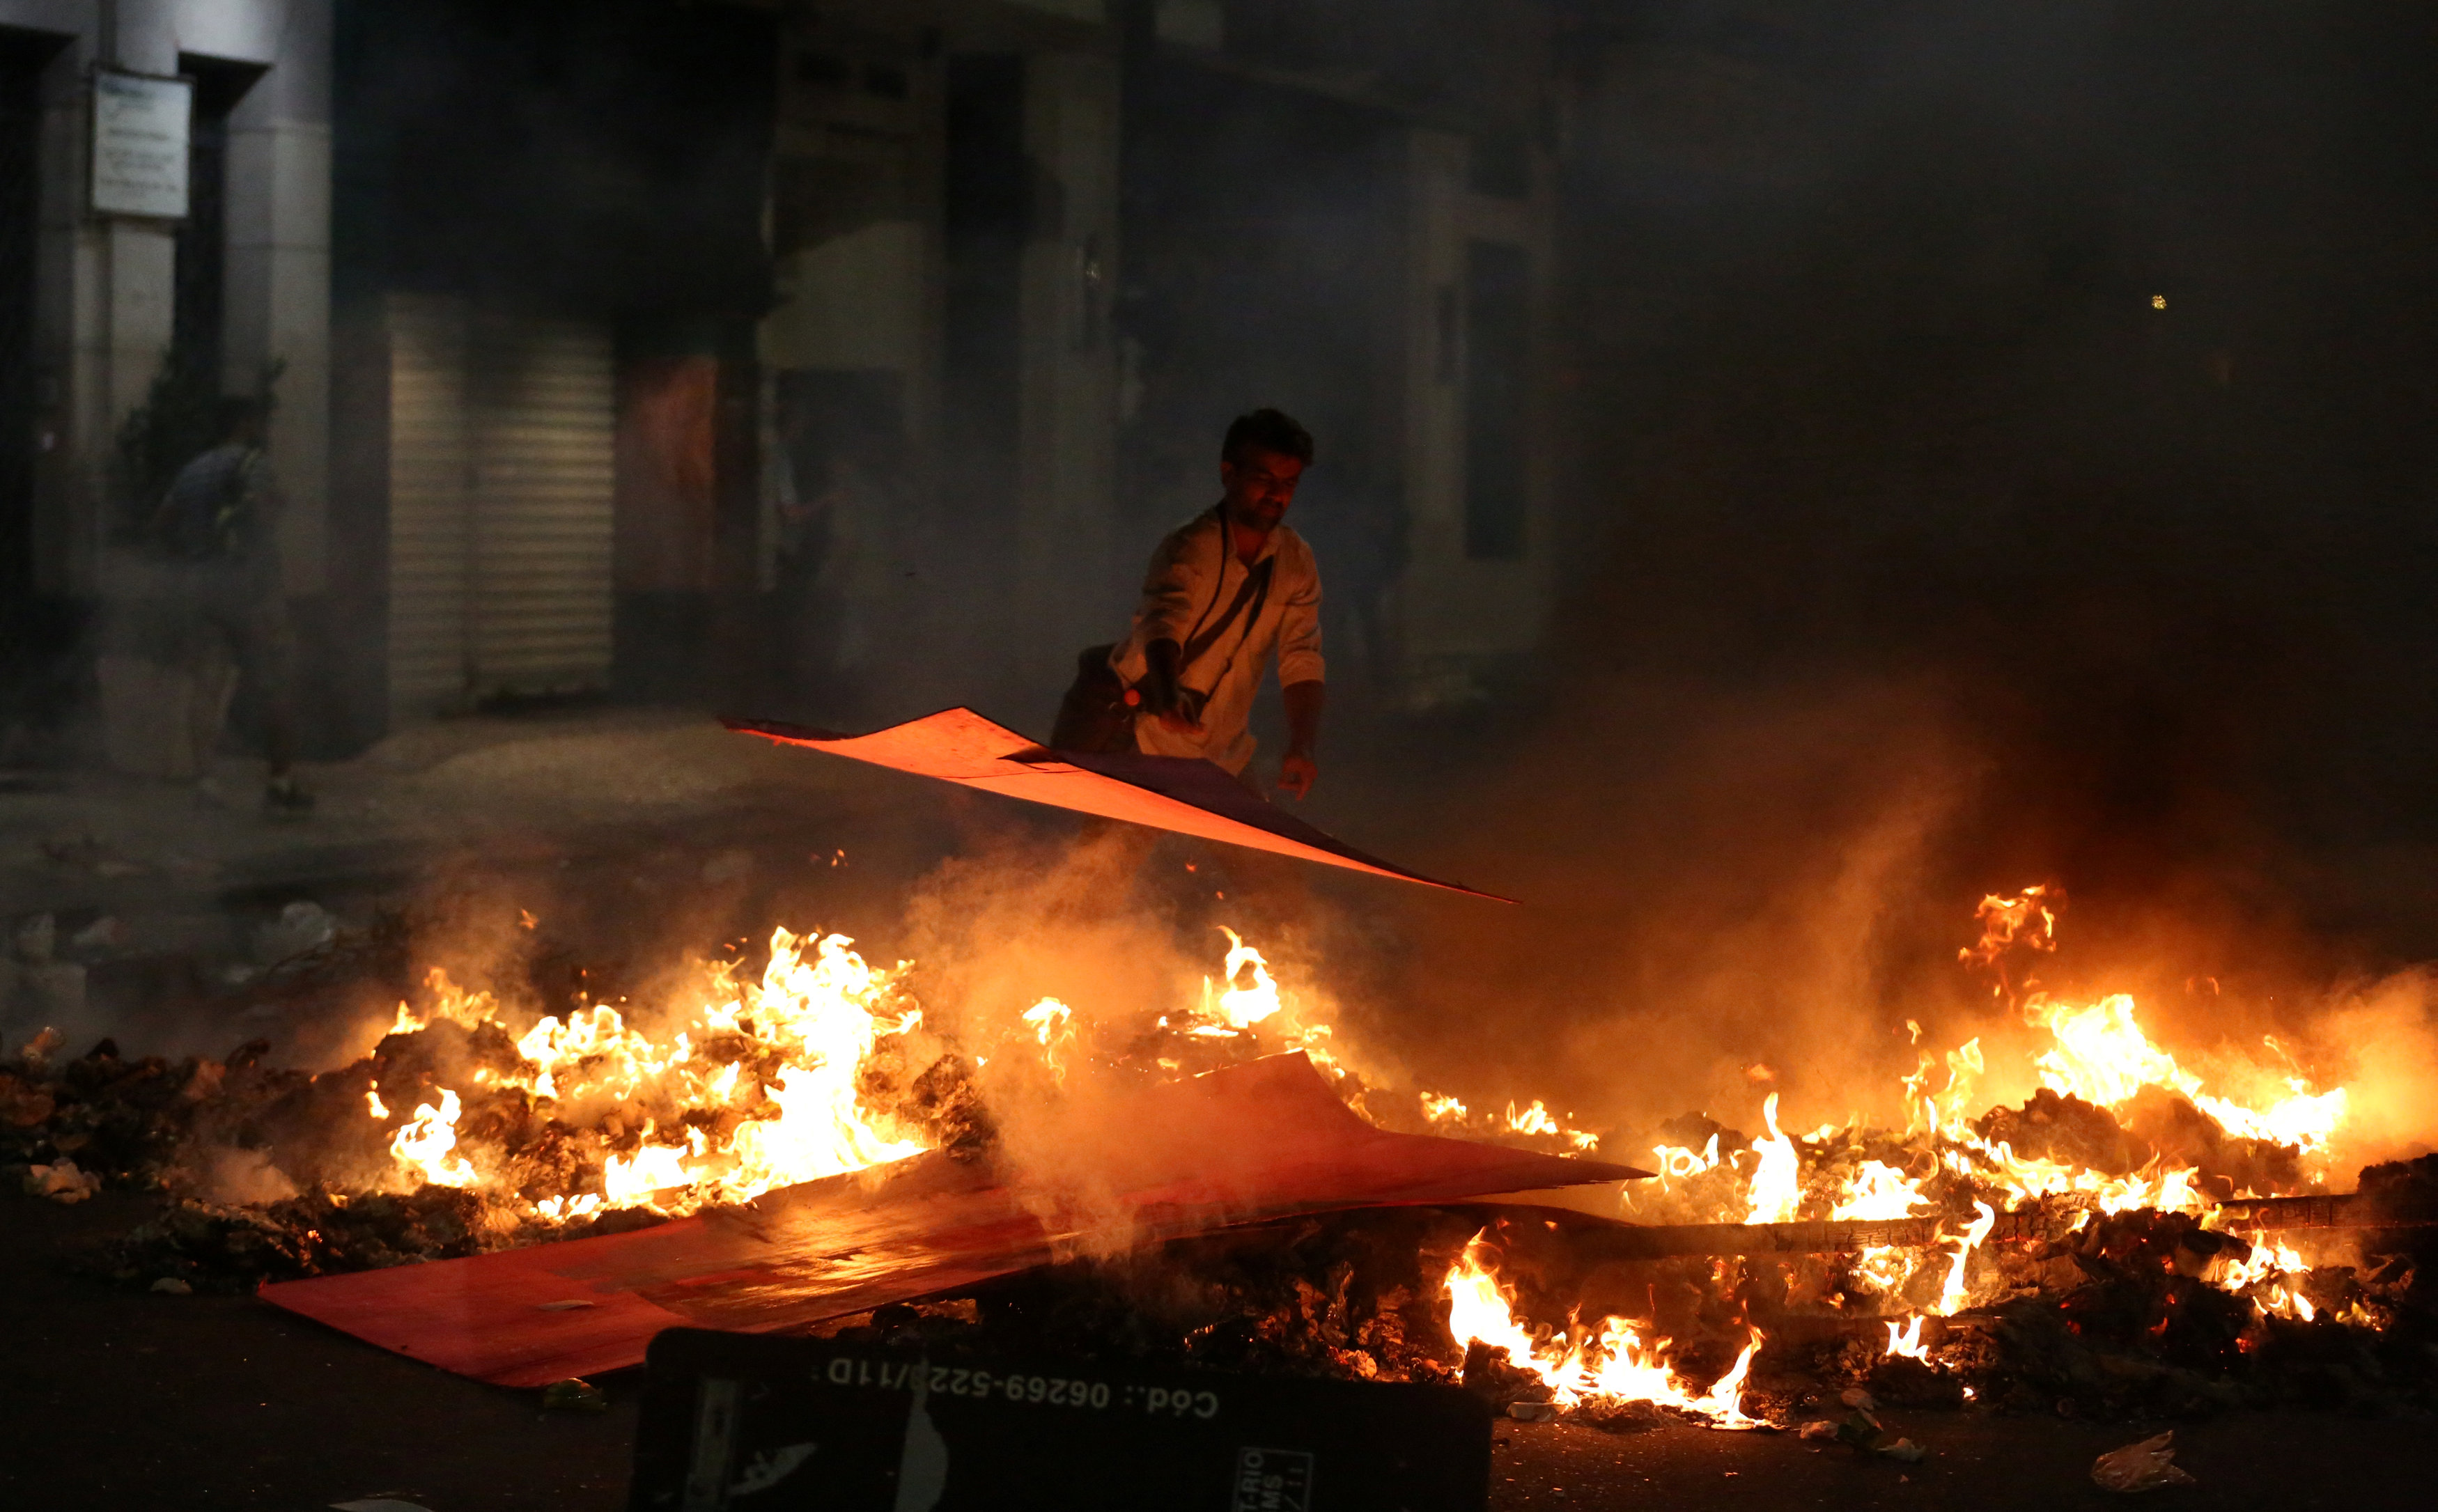 أحد المحتجين يشعل النيران احتجاجا على الرئيس البرازيلى المتهم بالفساد